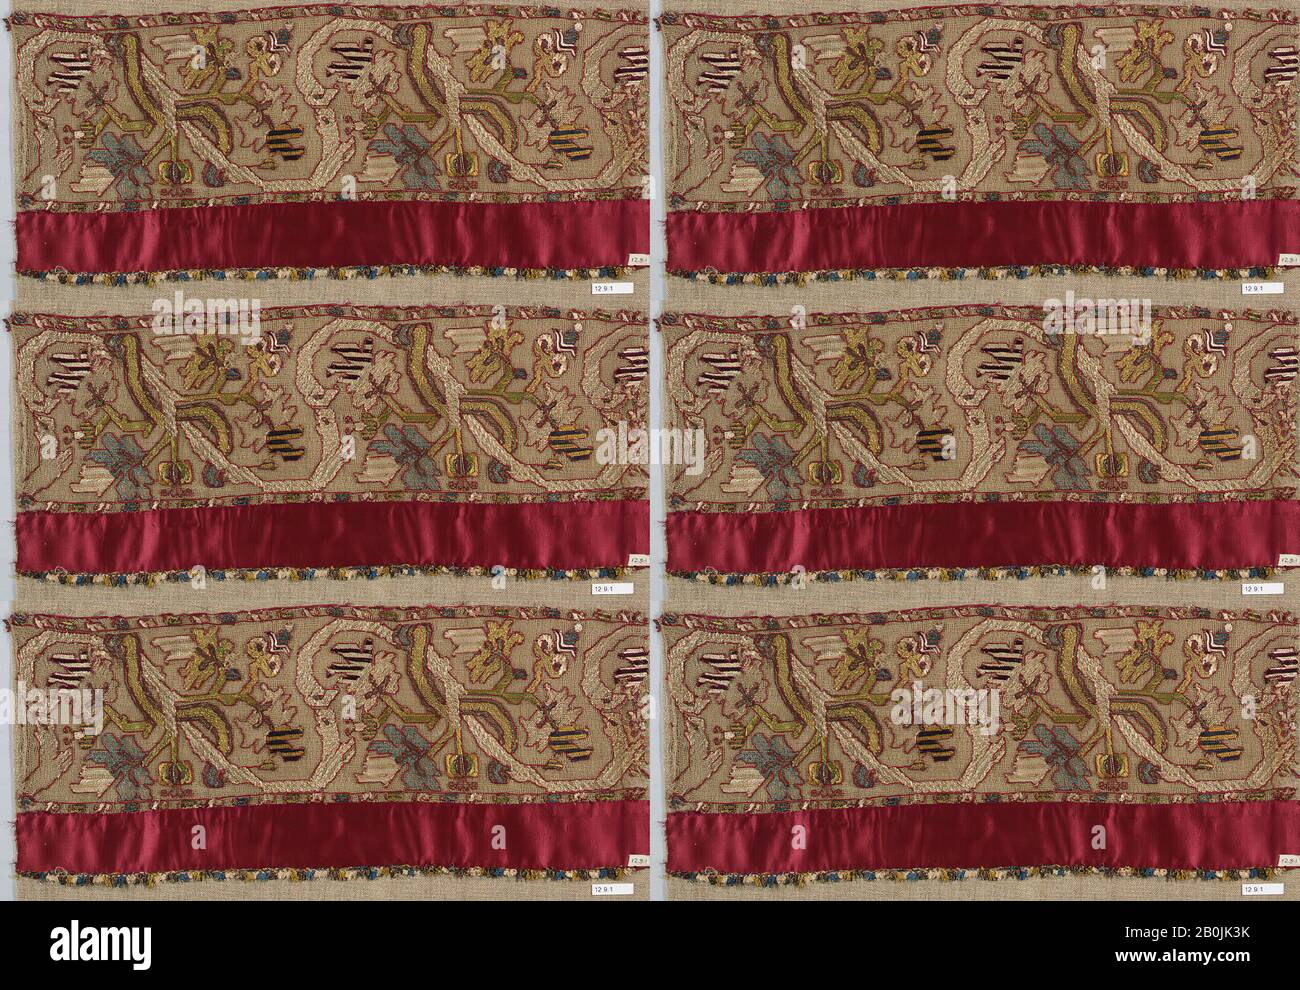 Strip, Italian, 16th–17th century, Italian, Embroidered net, buratto, silk, L. 18 1/2 x W. 8 inches, 47.0 x 20.3 cm, Textiles-Laces Stock Photo